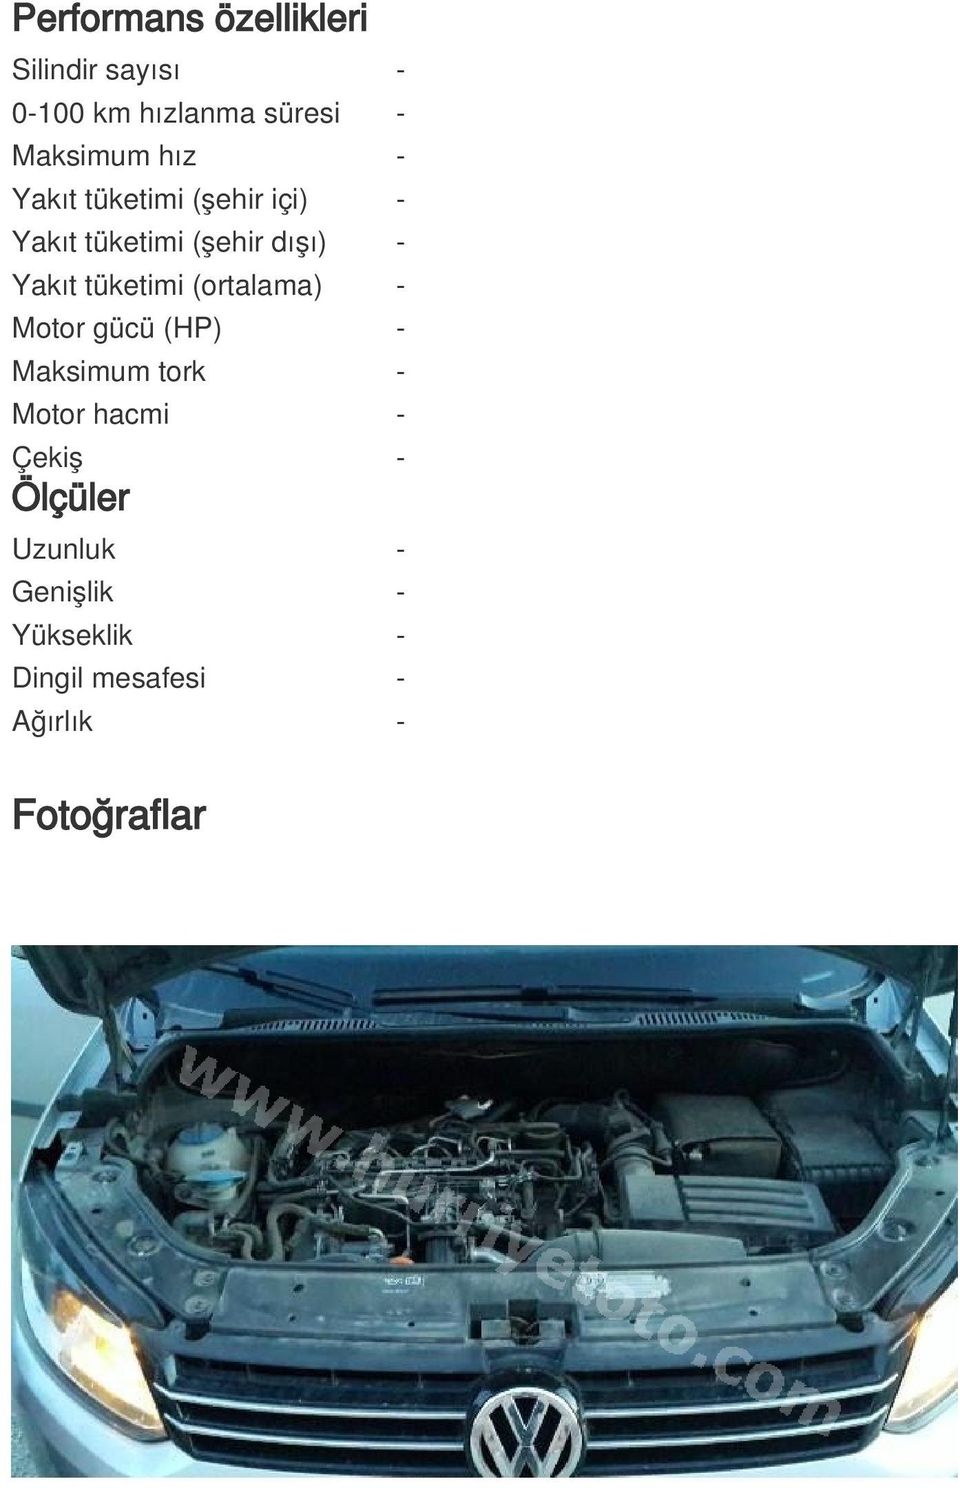 tüketimi (ortalama) - Motor gücü (HP) - Maksimum tork - Motor hacmi - Çekiş